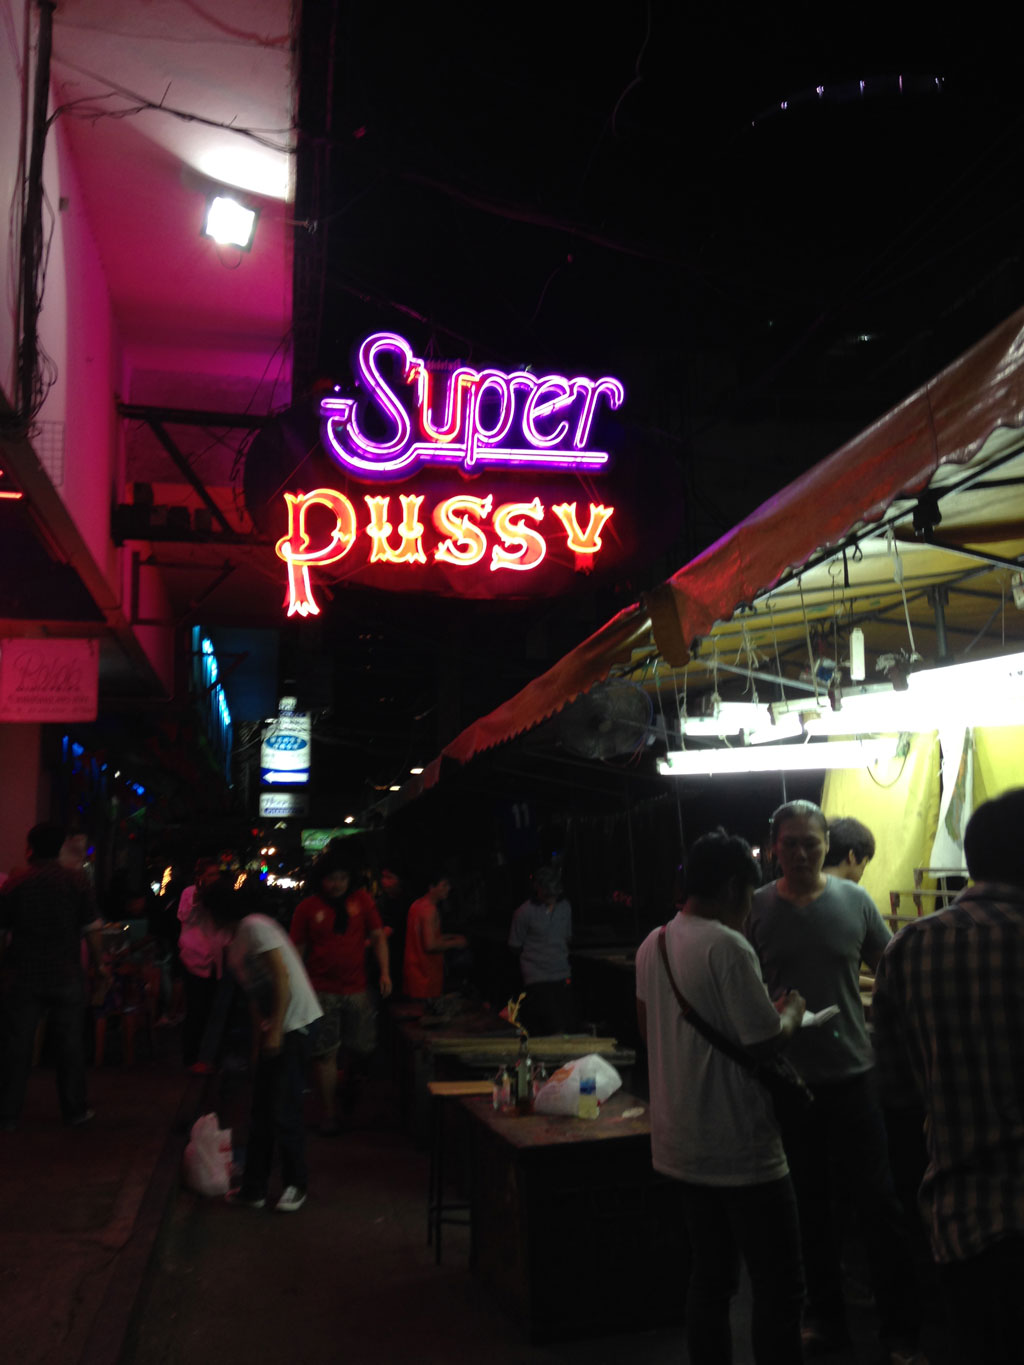 Ở Bangkok có hai phố đèn đỏ nổi tiếng, Soi Cowboy và Pat Pong, với những biển hiệu chào đón khách sử dụng dịch vụ tình dục công khai như một sản phẩm du lịch.